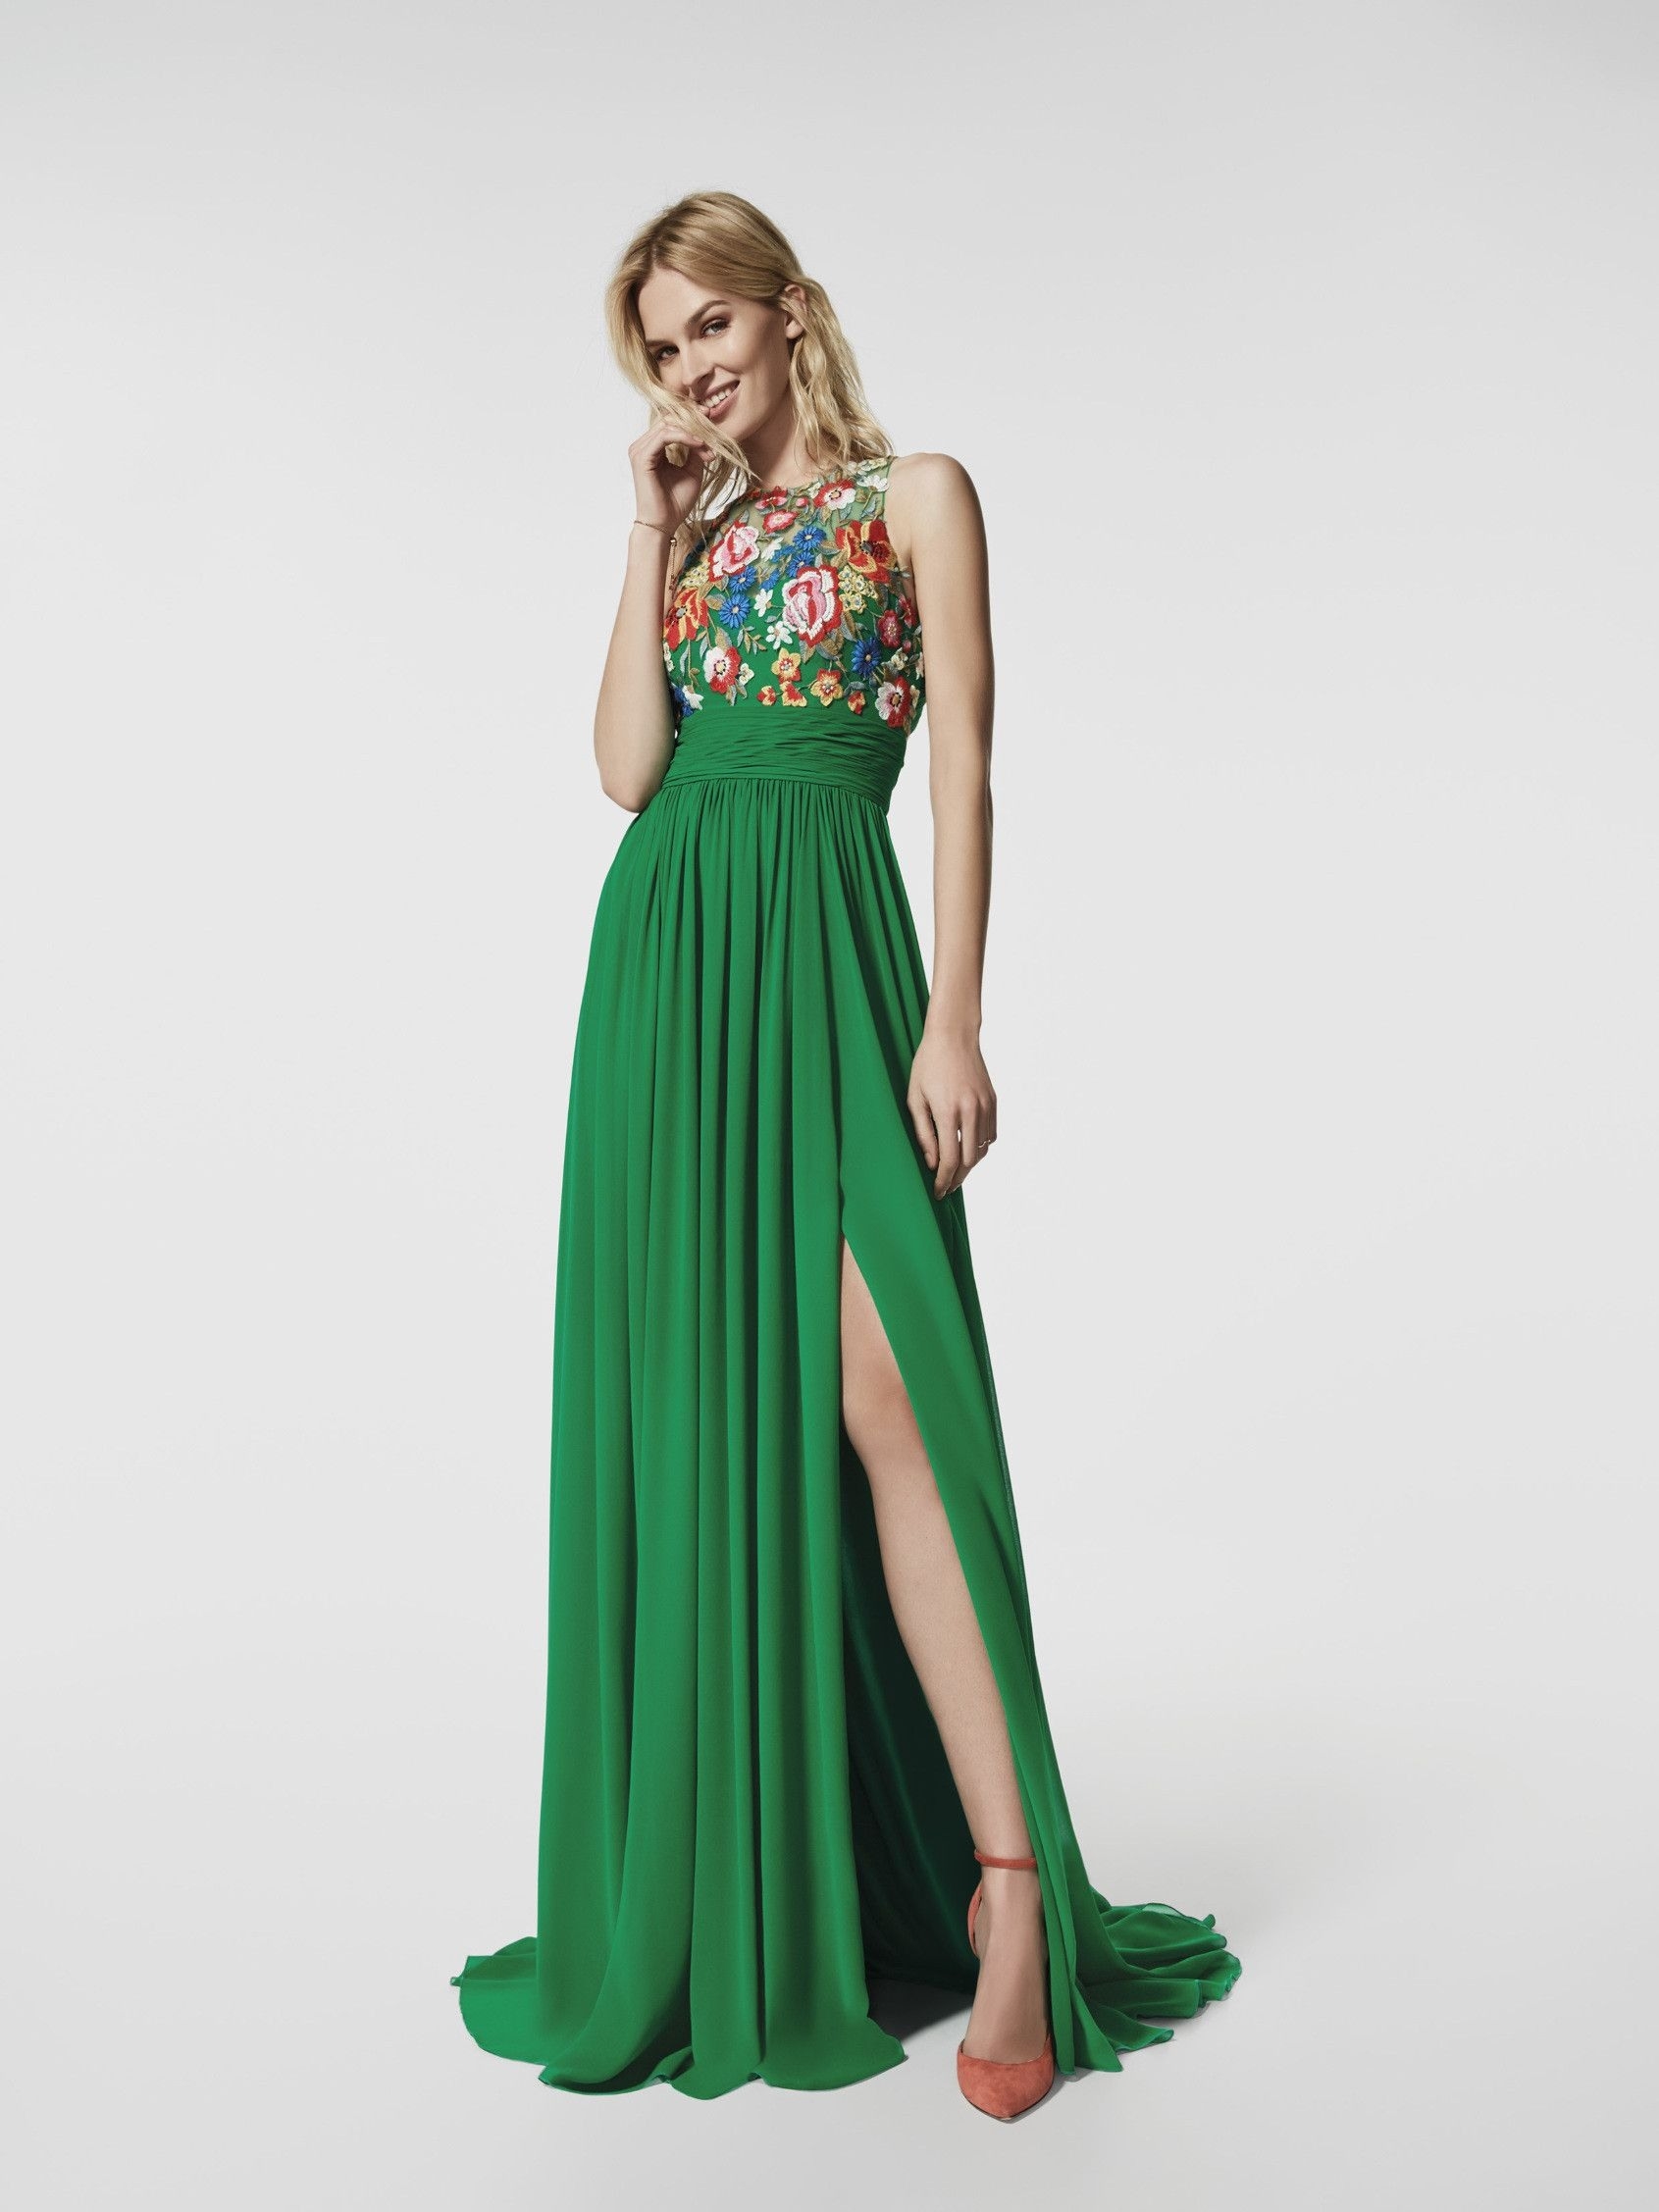 Abend Luxus Grünes Kleid Kurz GalerieDesigner Genial Grünes Kleid Kurz Galerie